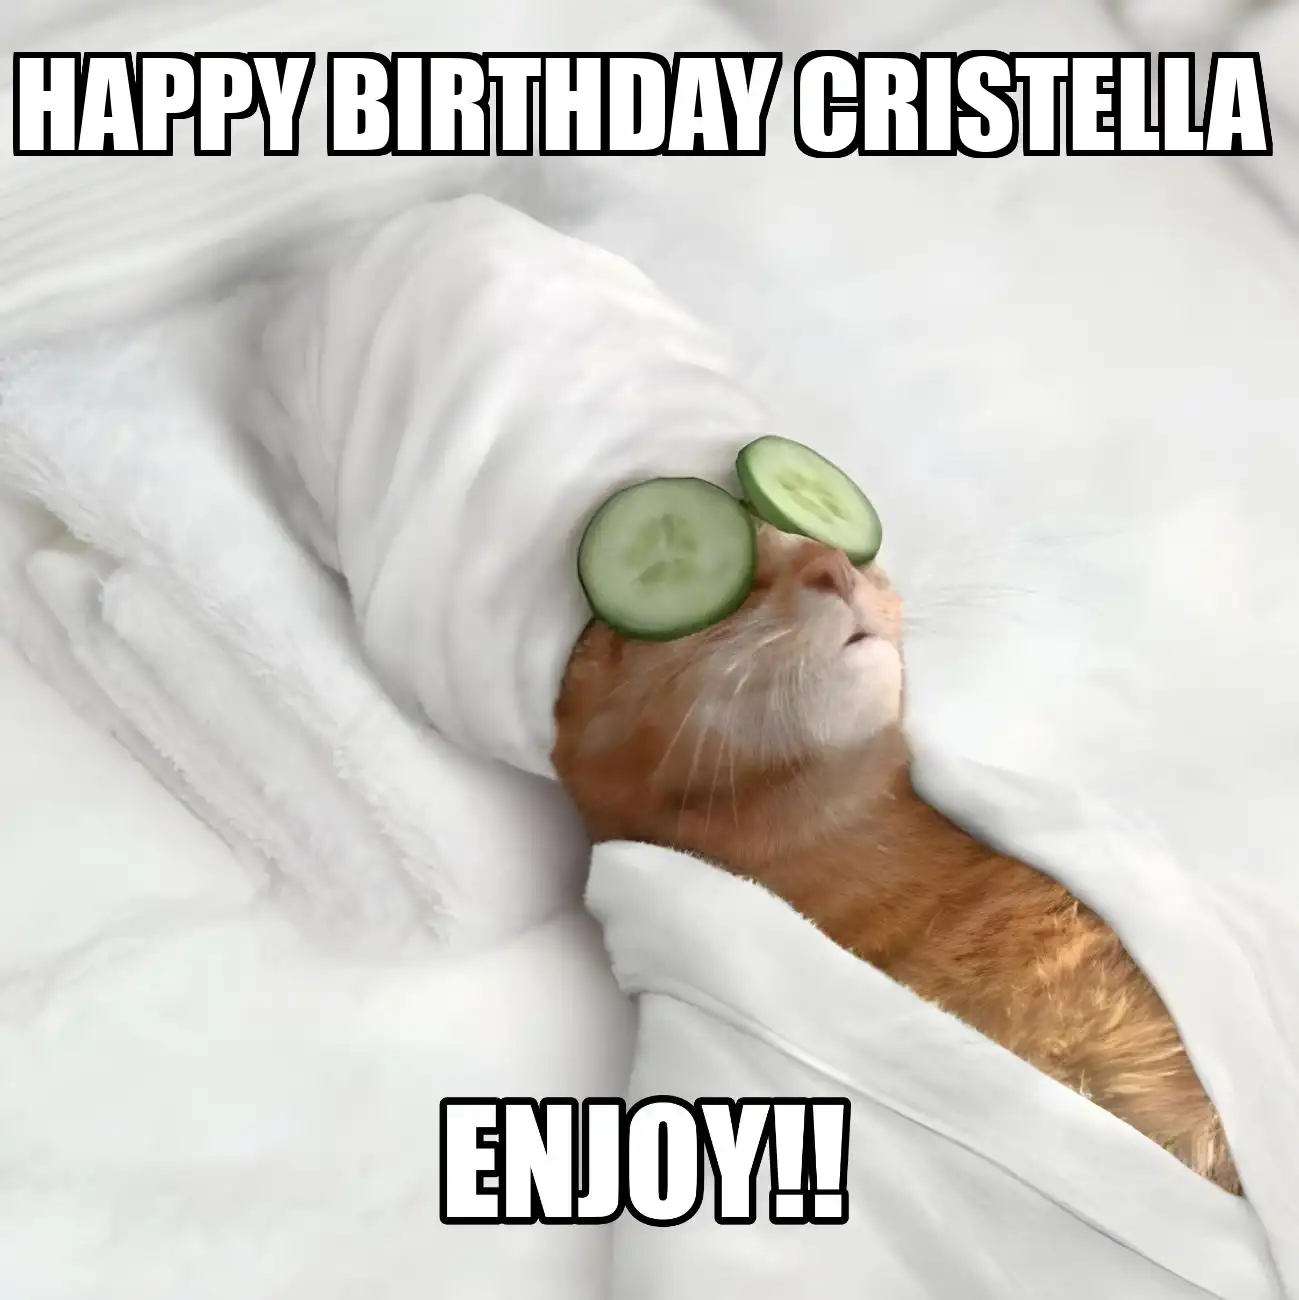 Happy Birthday Cristella Enjoy Cat Meme